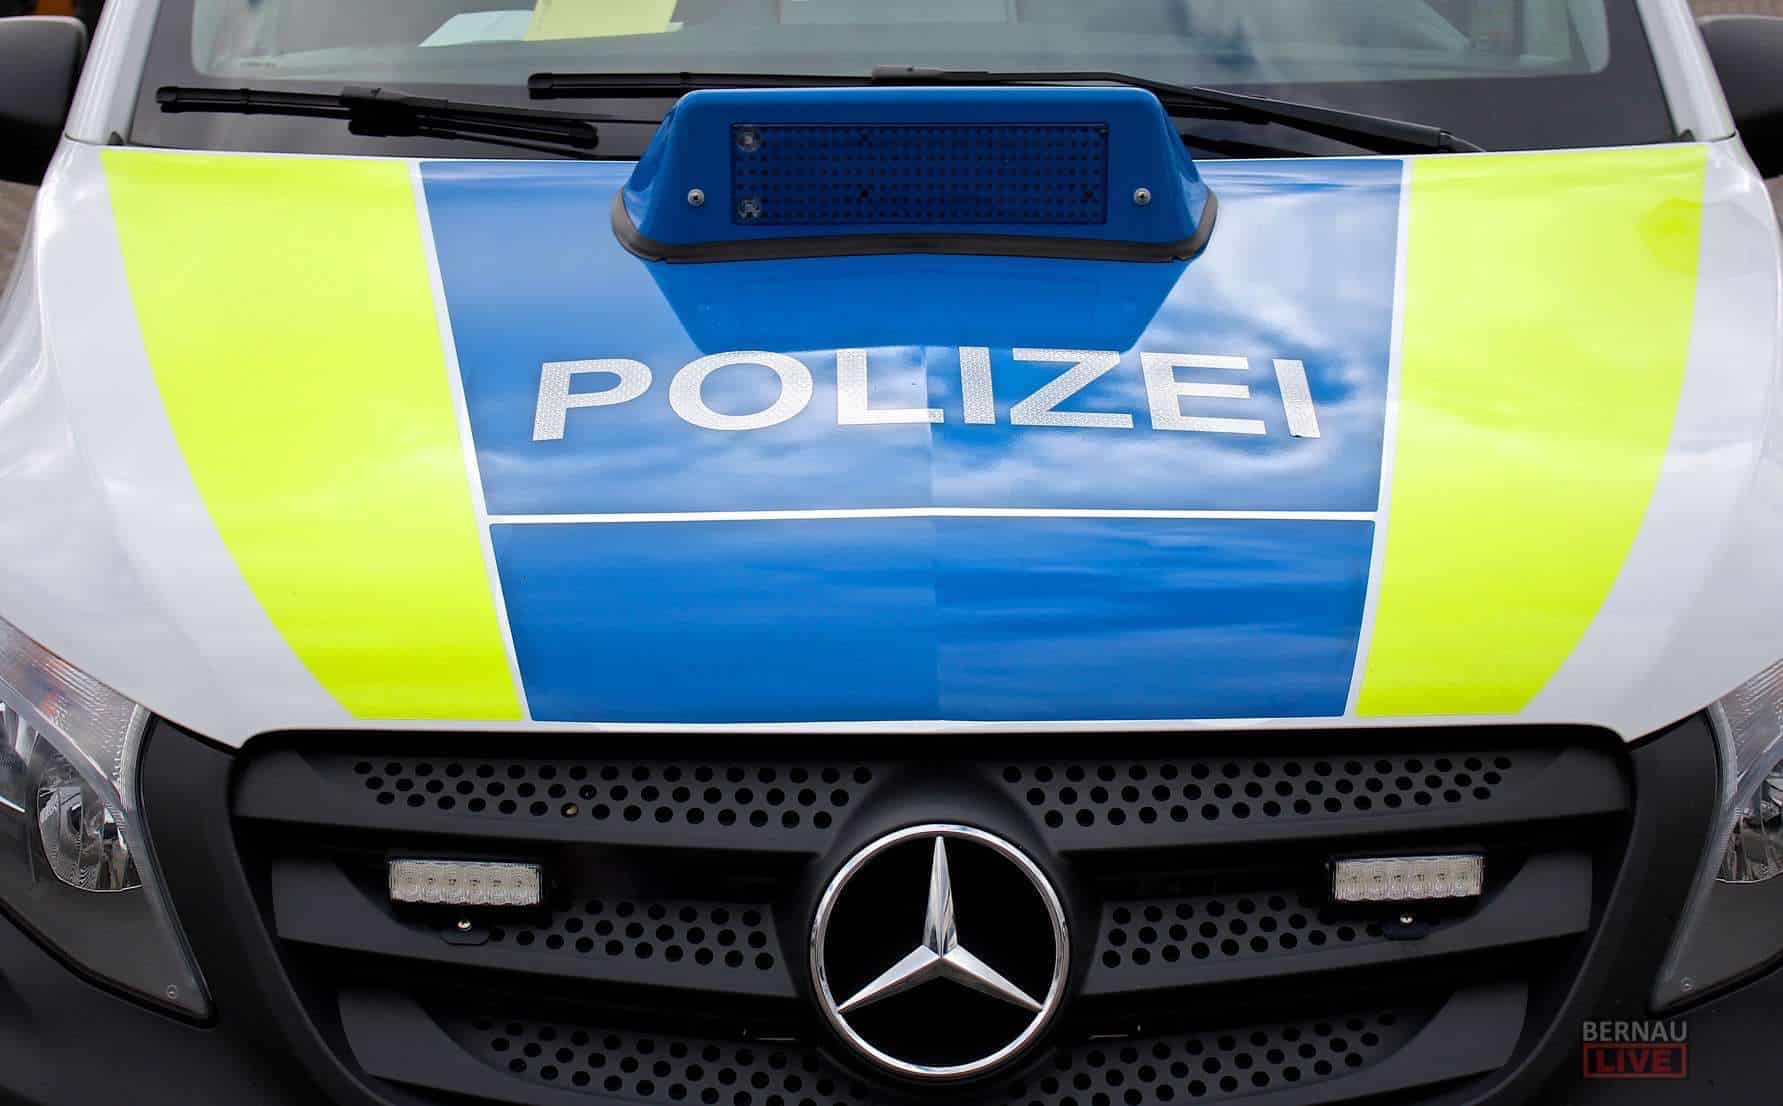 Polizei Barnim: VW T5 in Bernau gestohlen und weitere Meldungen